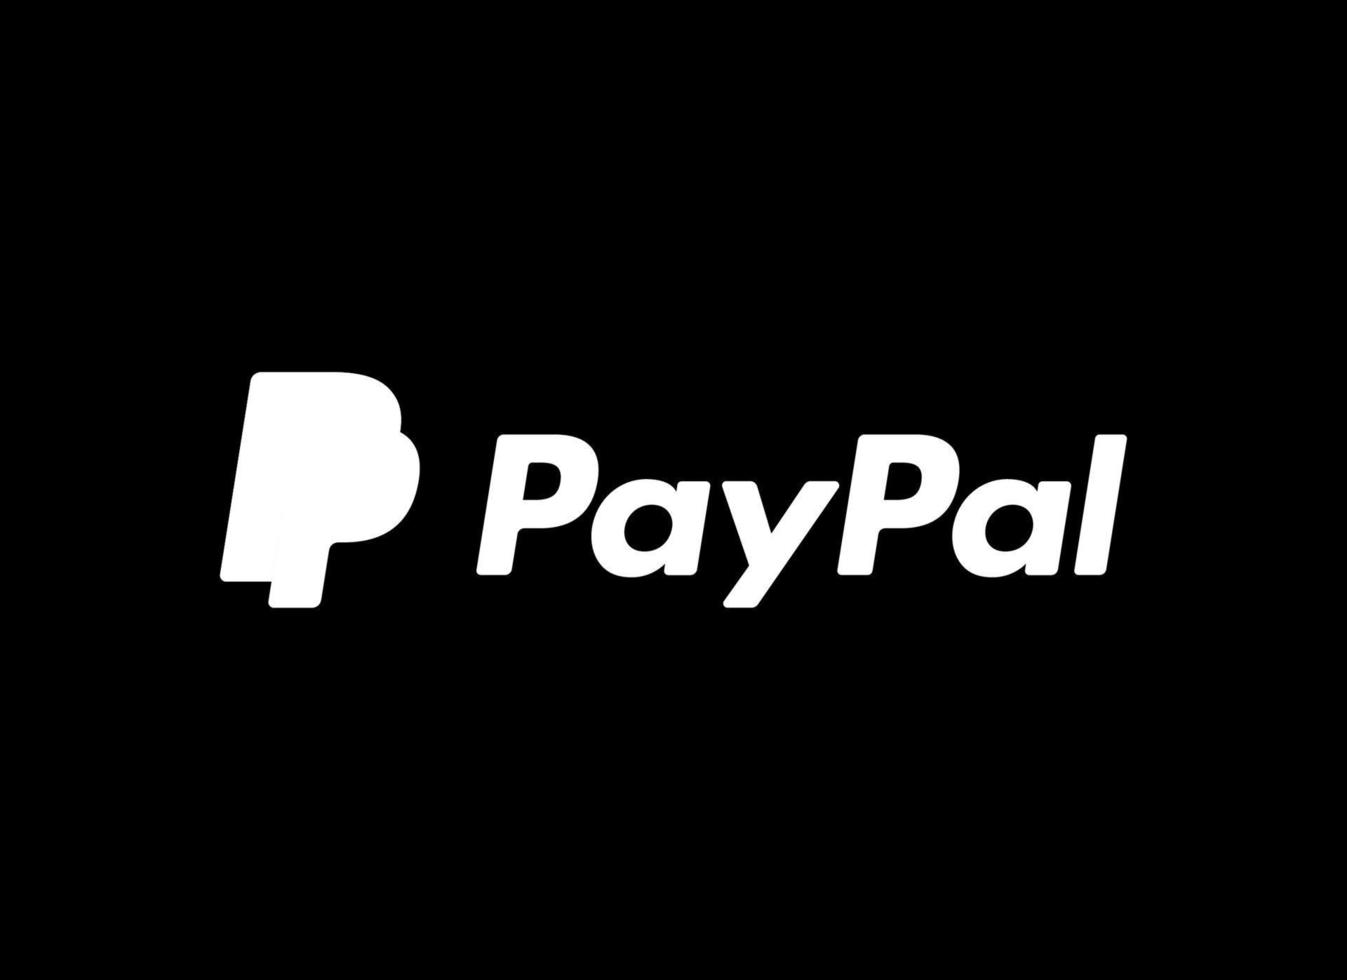 paypal logo vector, paypal logo free vector